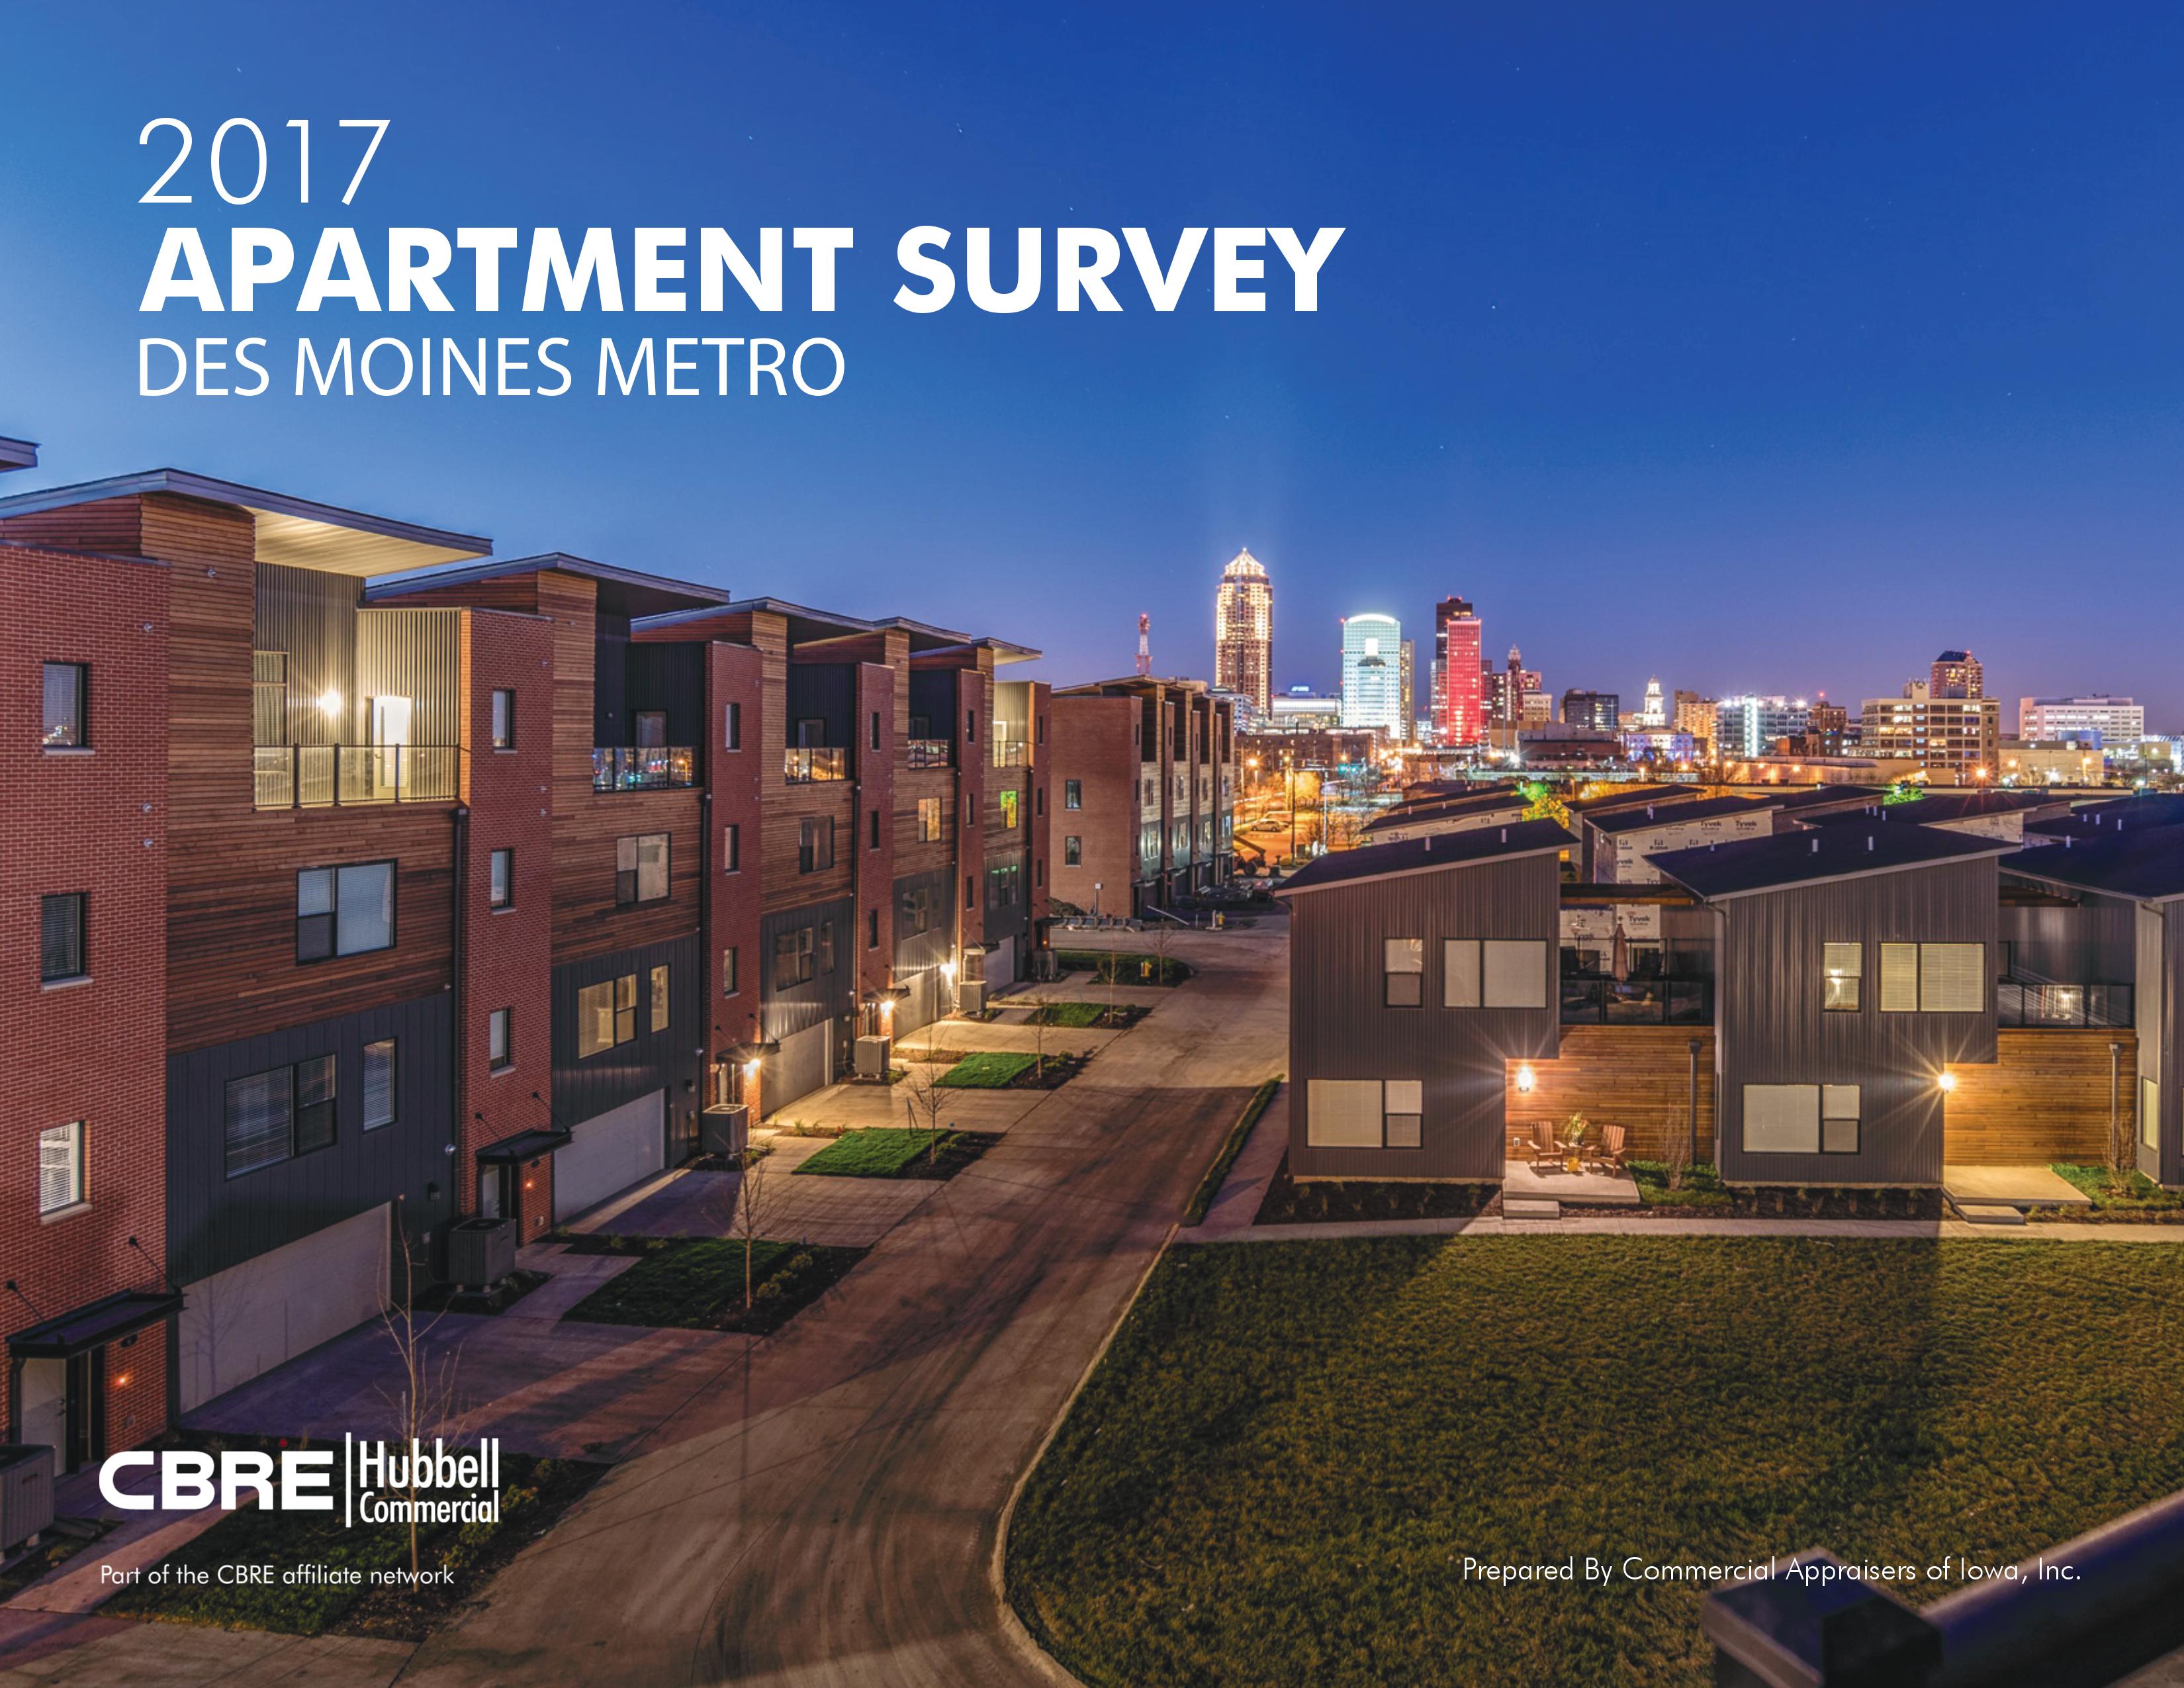 Des Moines Metro Apartment Survey 2017 image